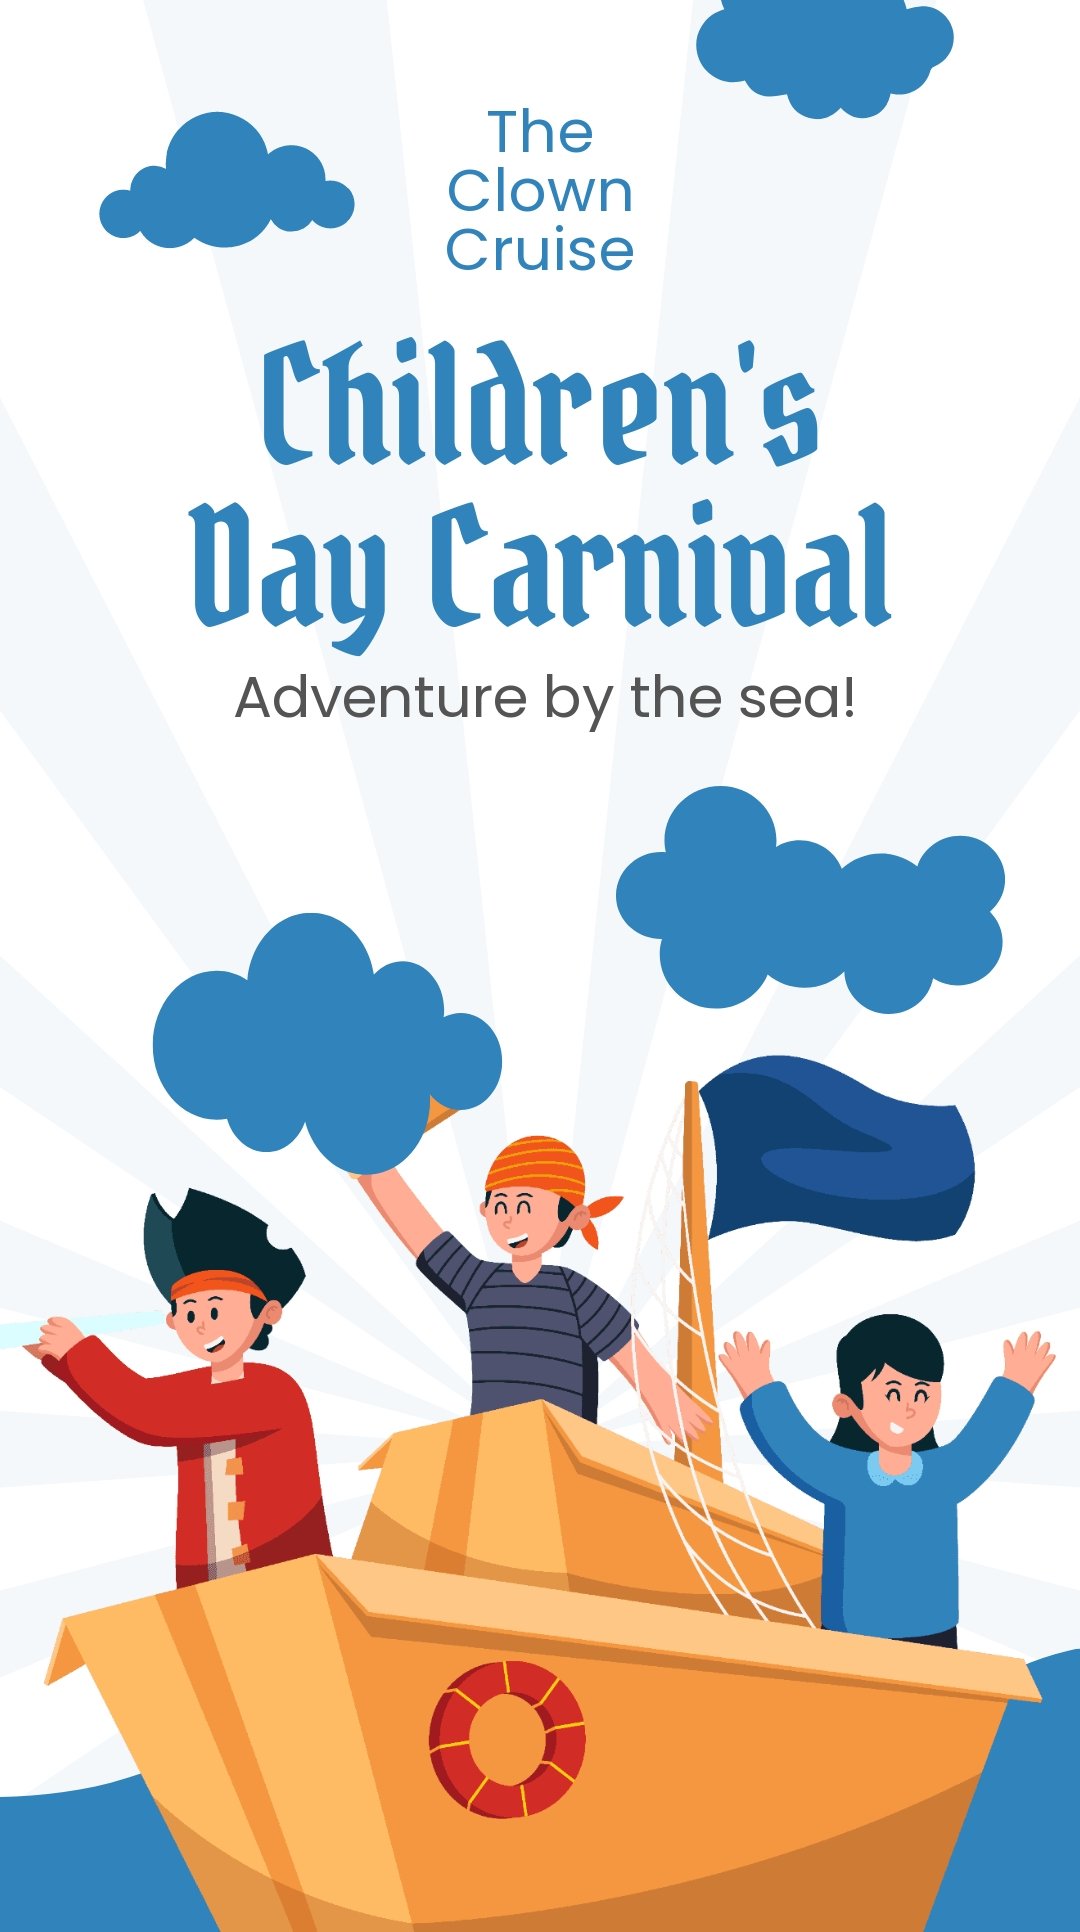 Children's Day Carnival Instagram Story